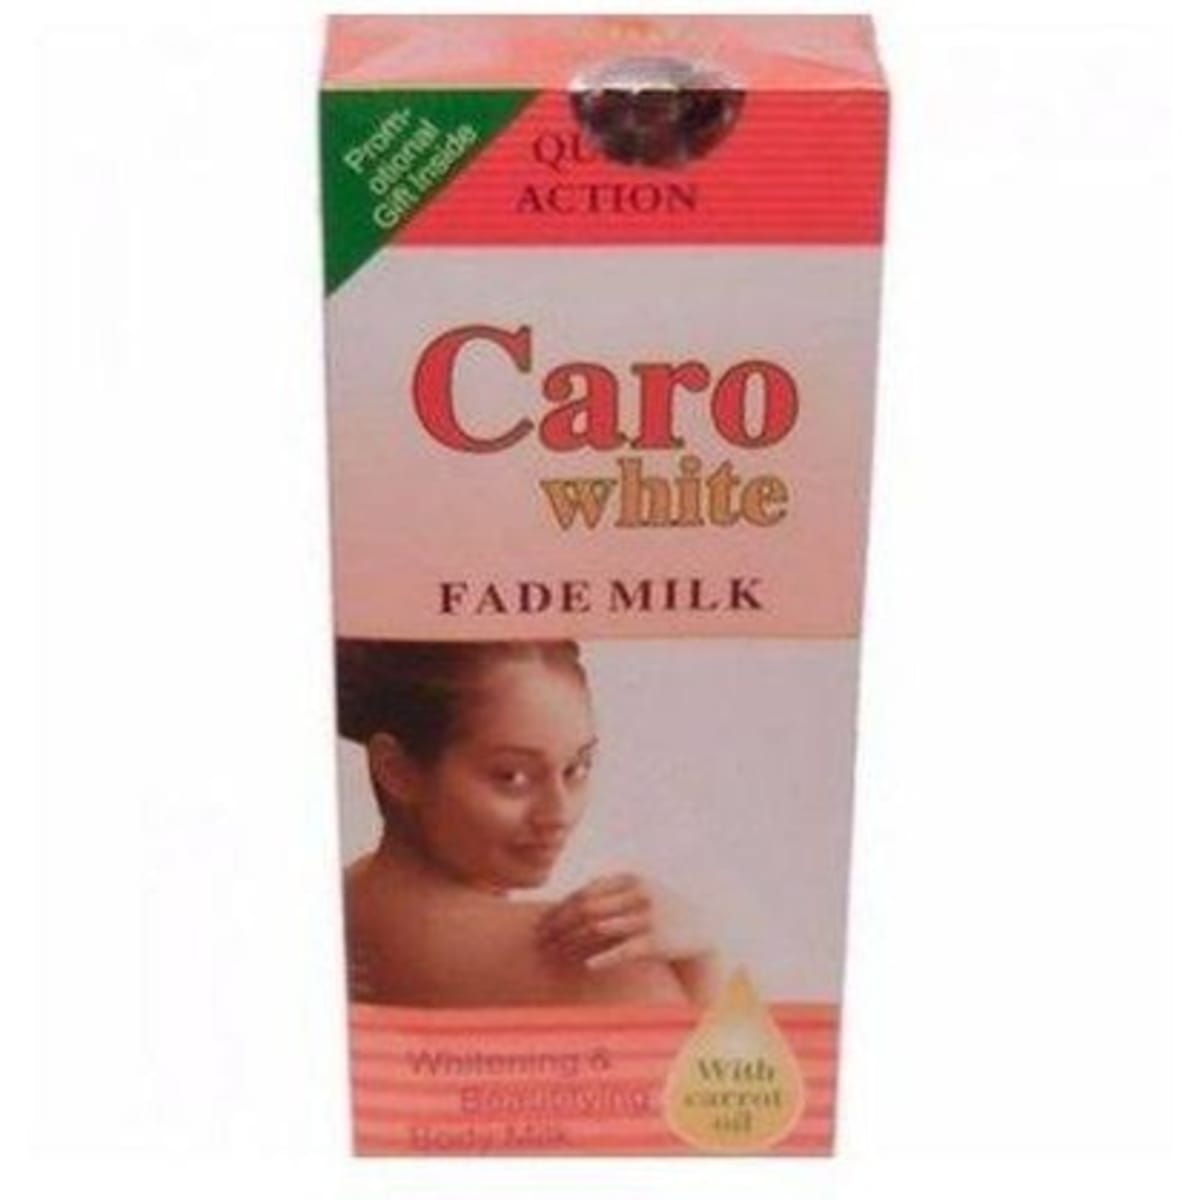 Caro White Fade Milk Body Lotion - 400ml